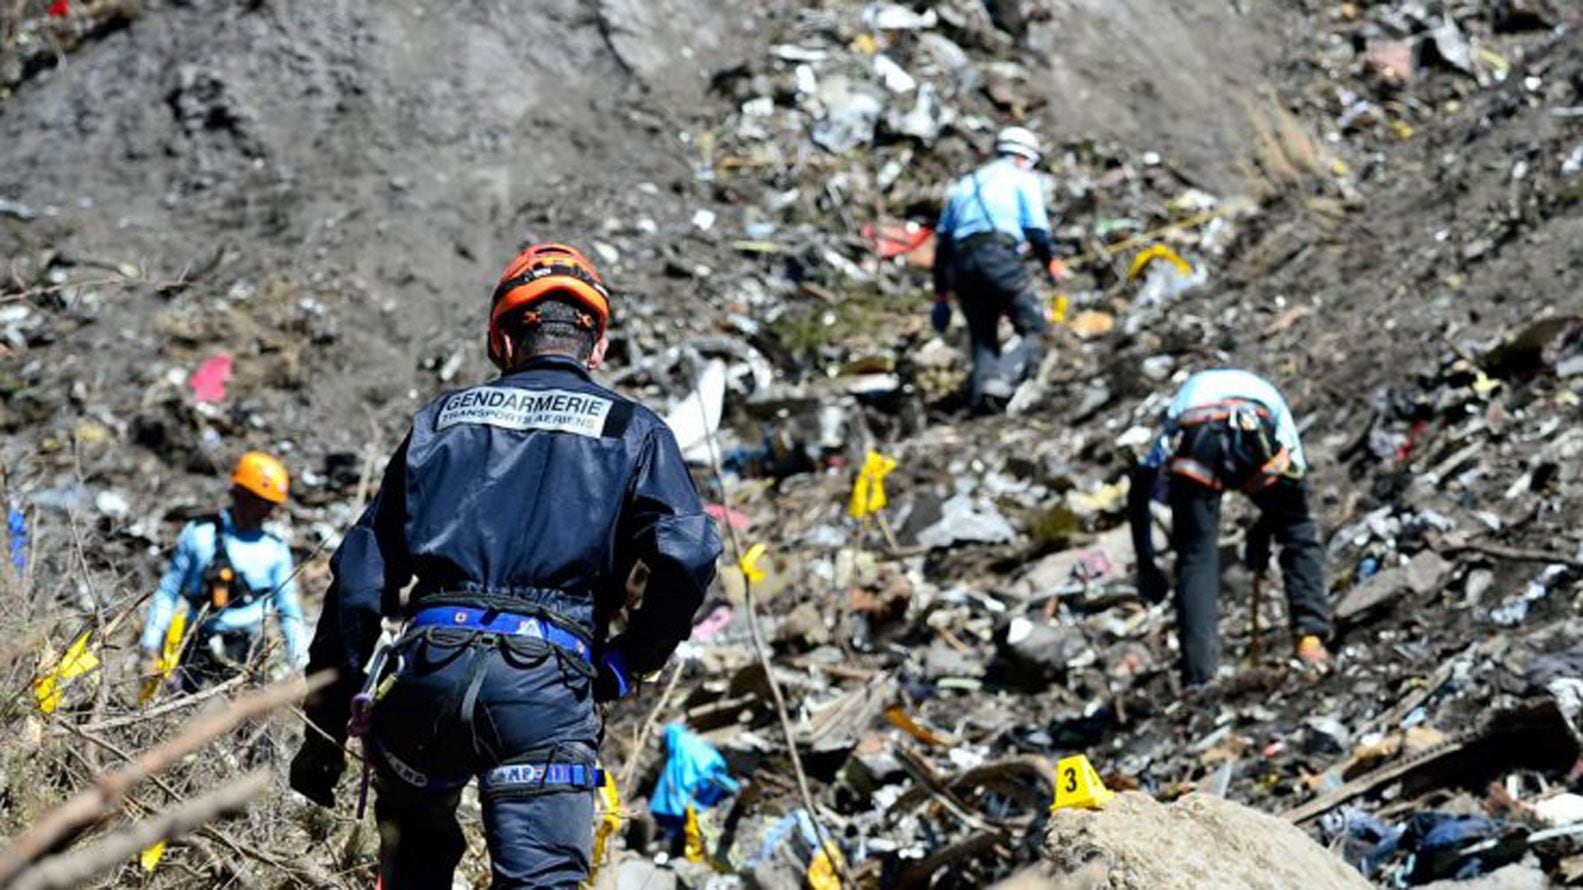 El lugar donde se estrelló el avión de Germanwings en los Alpes franceses en 2015. Las autoridades francesas descubrieron que Andreas Lubitz, copiloto del avión, había recibido tratamiento por tendencias suicidas, pero ocultó su estado a su jefe